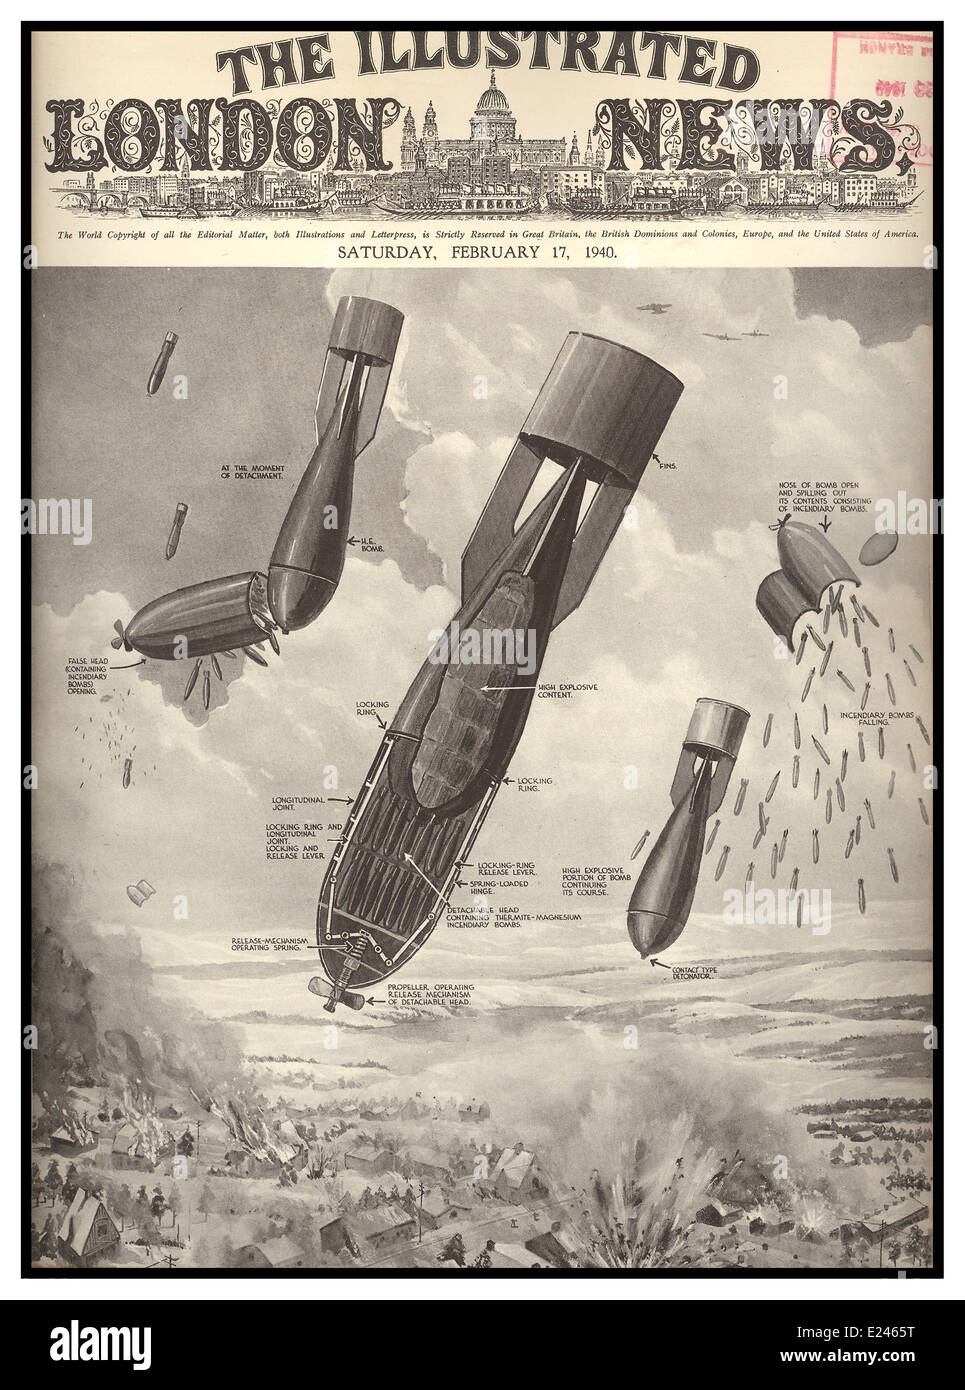 LONDON BLITZ notizie bombe 17 febbraio 1940 coperchio anteriore della Illustrated London News che mostra il funzionamento interno di bombardamenti tedeschi che piovono a Londra Foto Stock